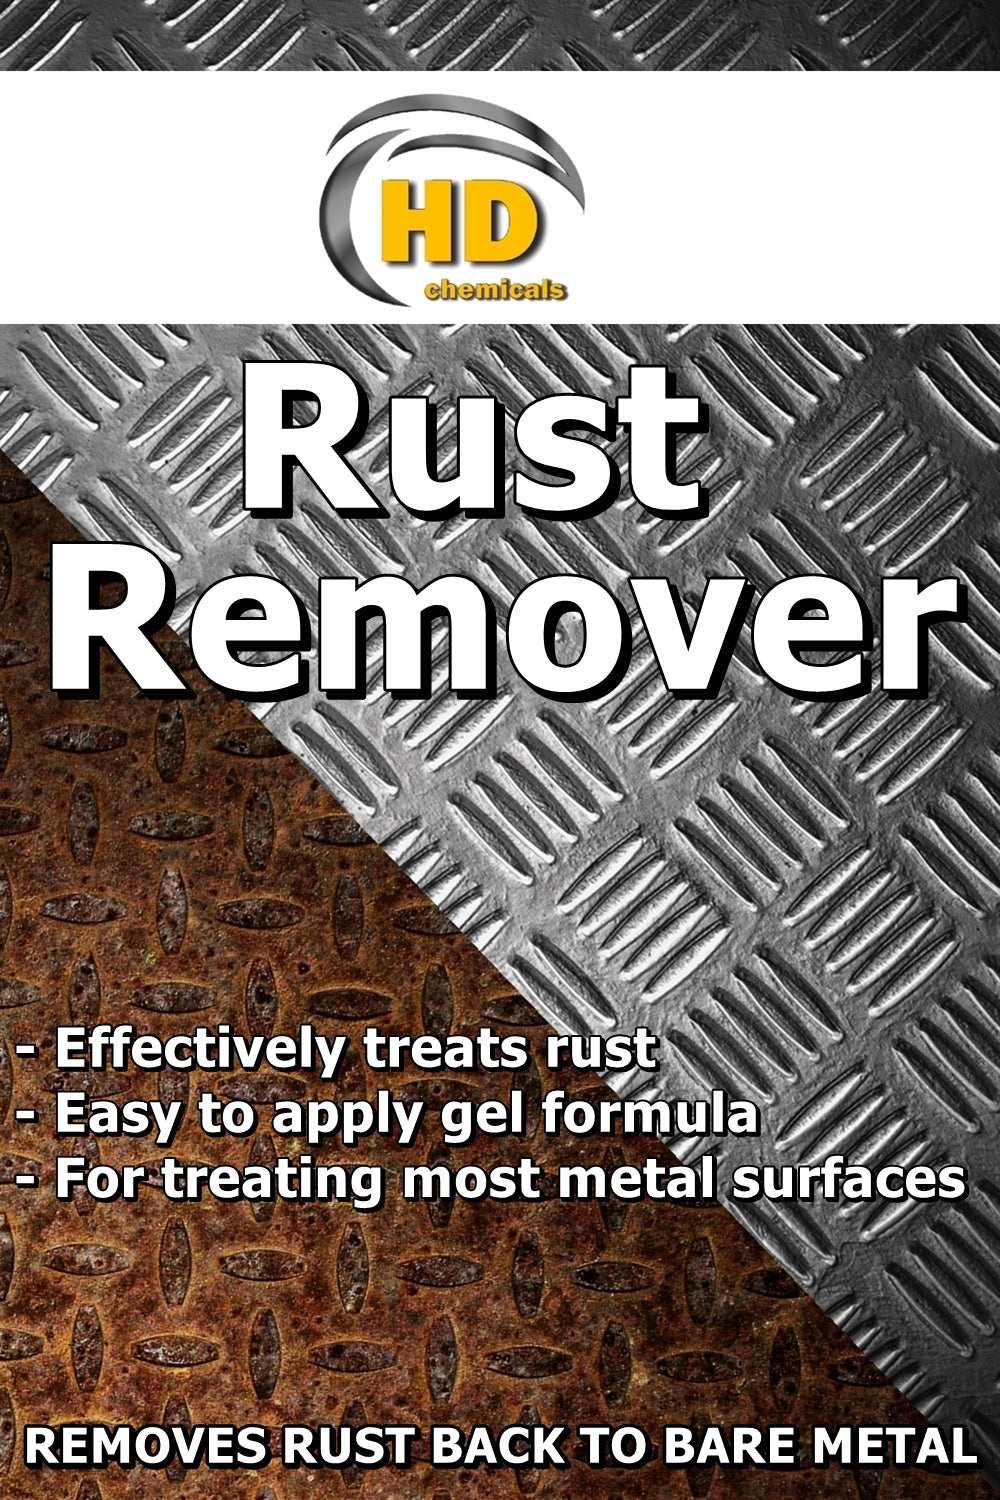 Buy Rust Eraser - UK's Best Online Price